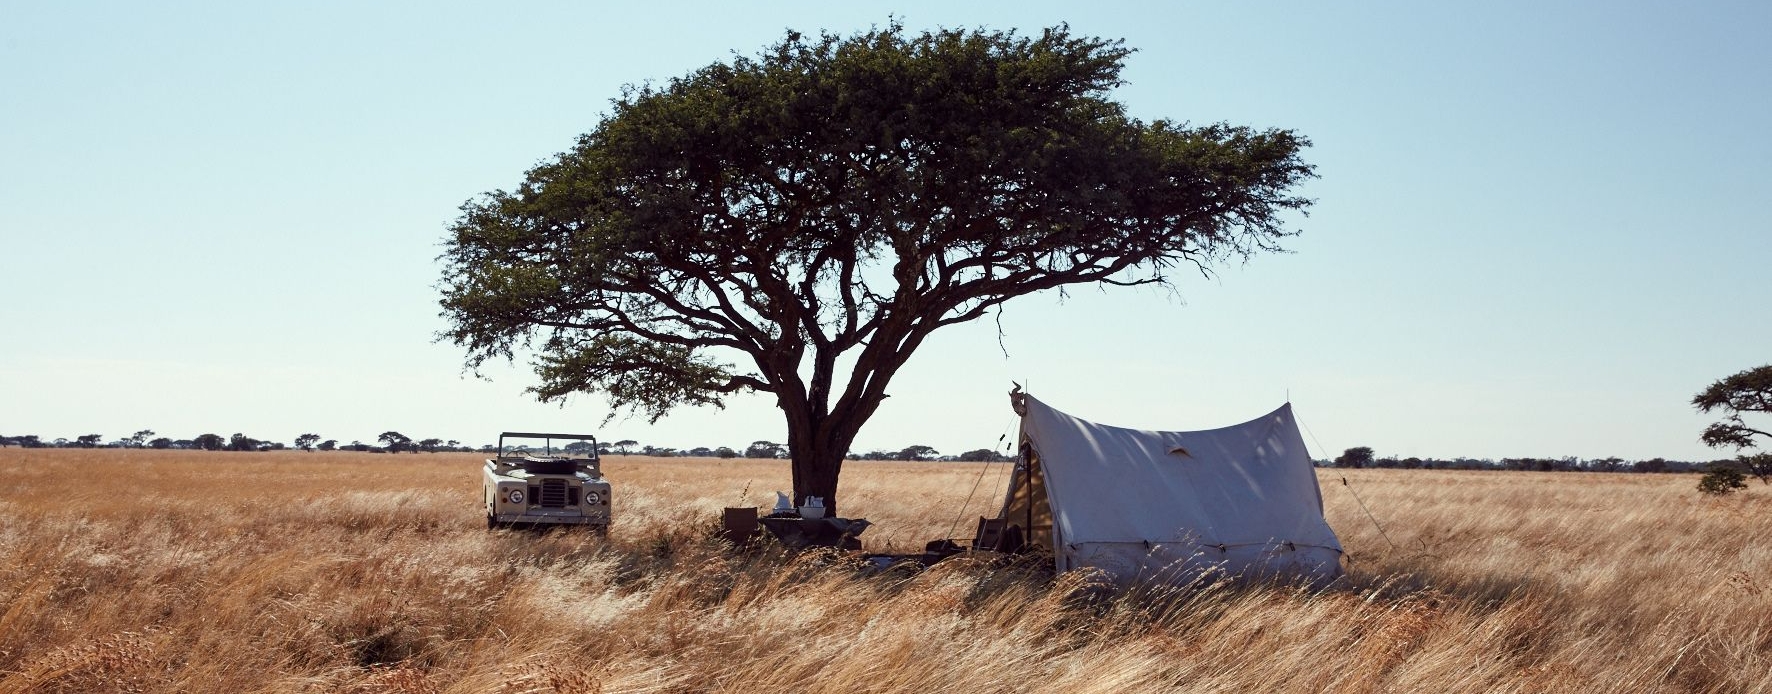 Eine Schirmakazie mit Zelt und Jeep in Afrika